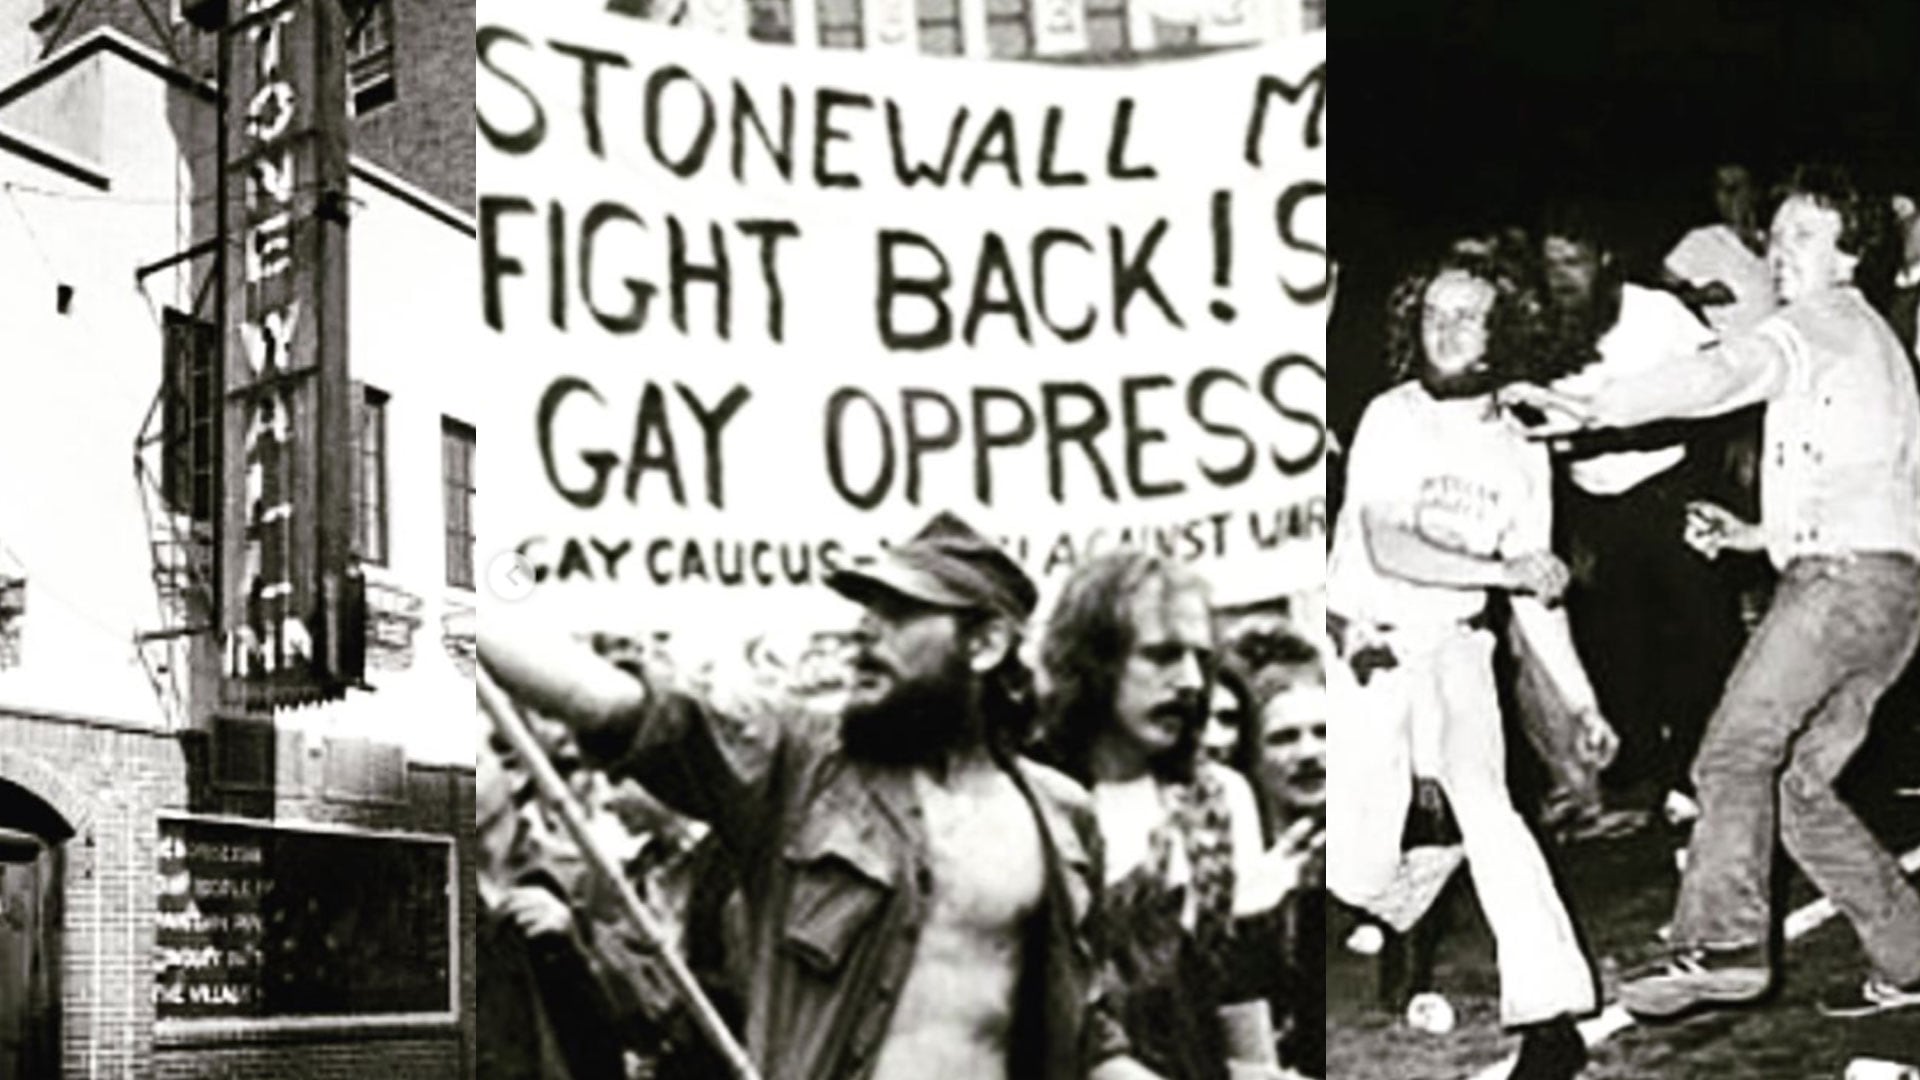 La comunidad LGBT+ enfrentaba redadas y acoso policial en bares y clubes durante los años 60 (Foto: instagram stonewall inn)